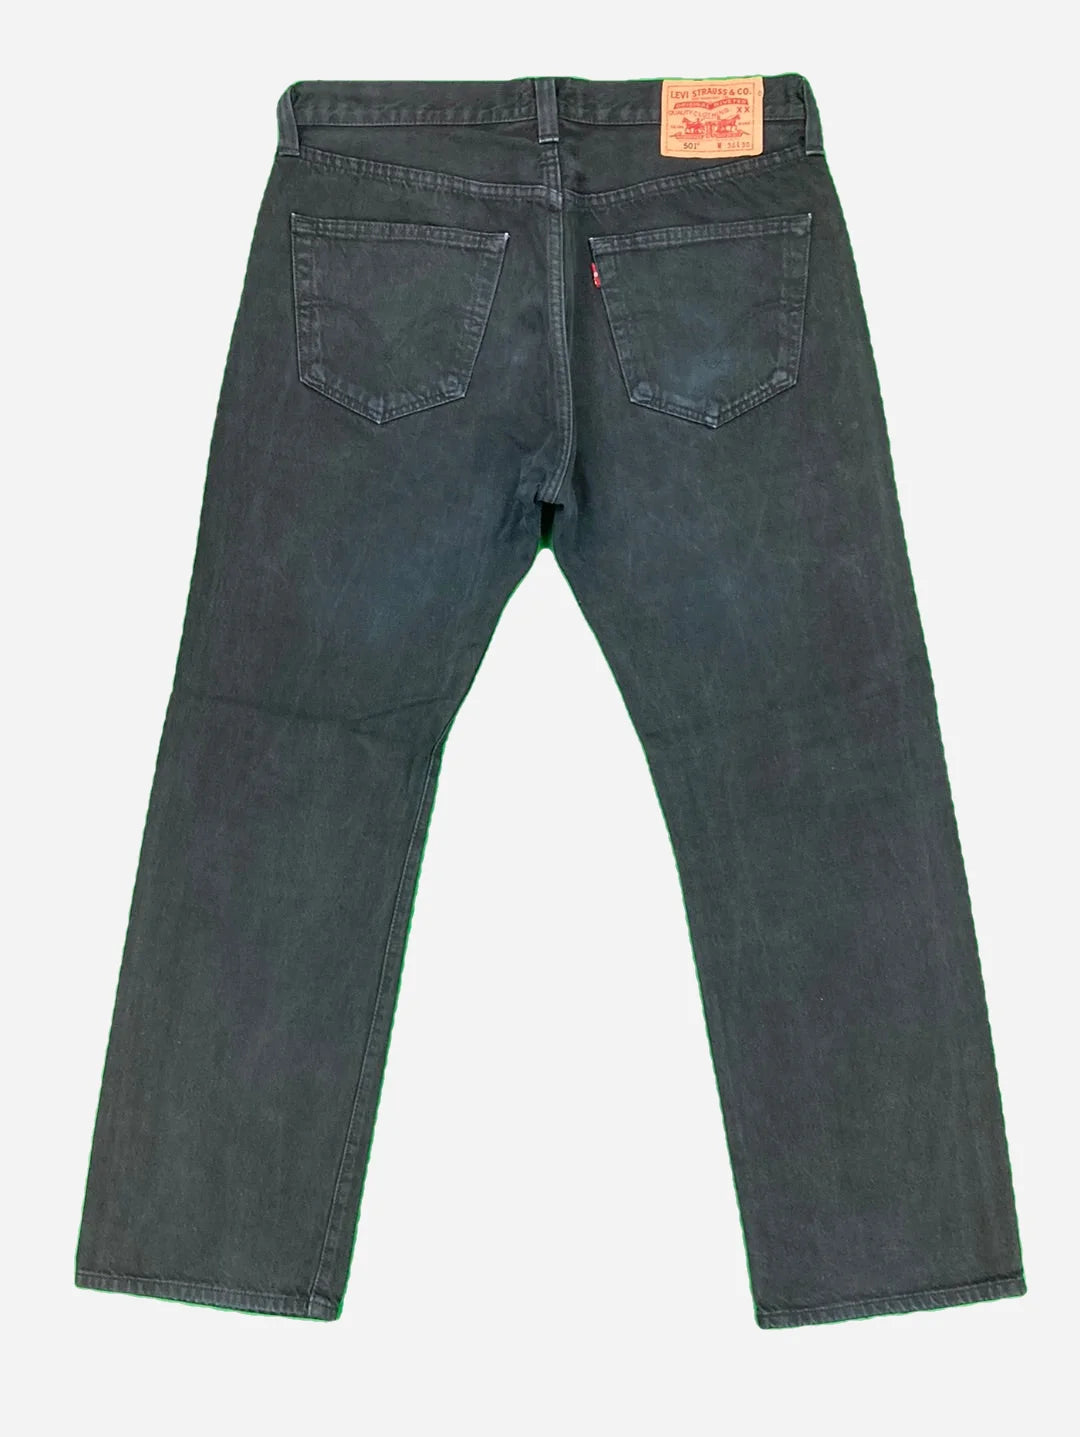 Levi's 501 Jeans 36/30 (L)